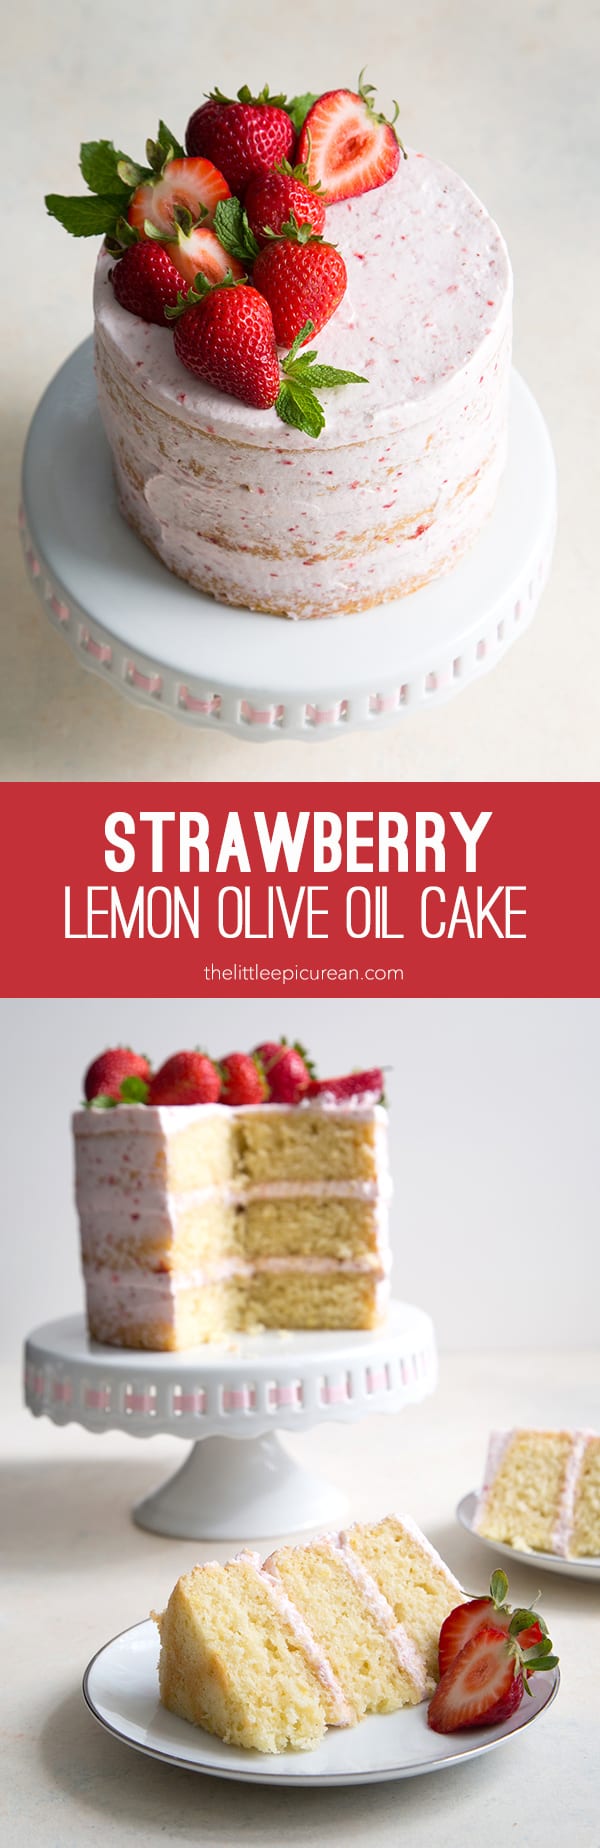 Strawberry Lemon Olive Oil Cake